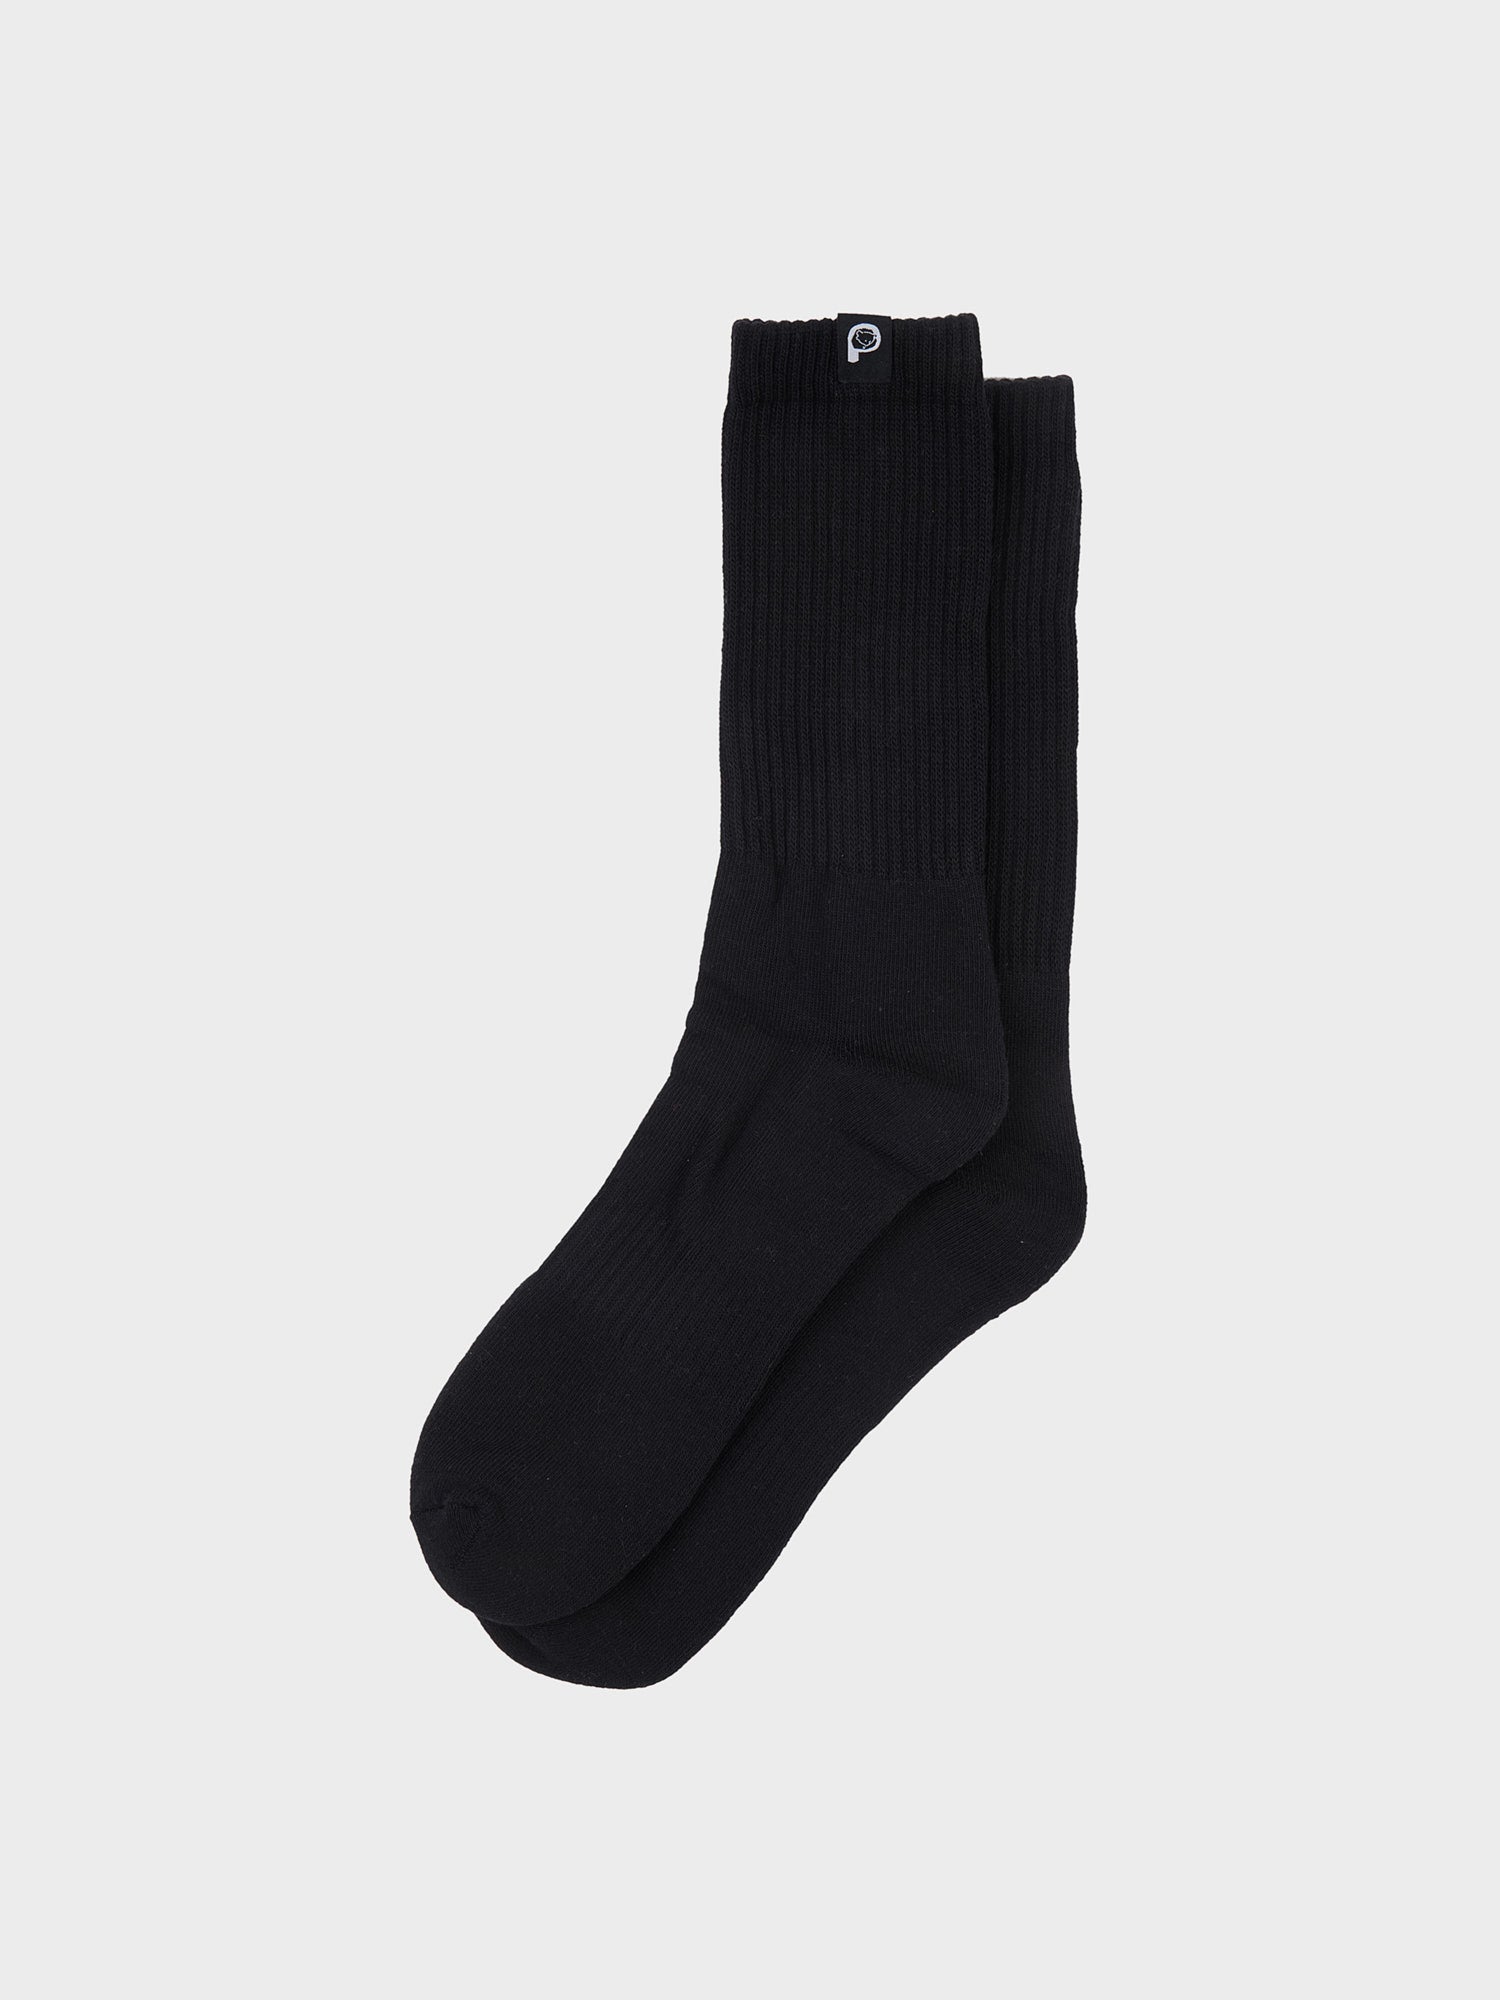 2 Pack Socks in Black